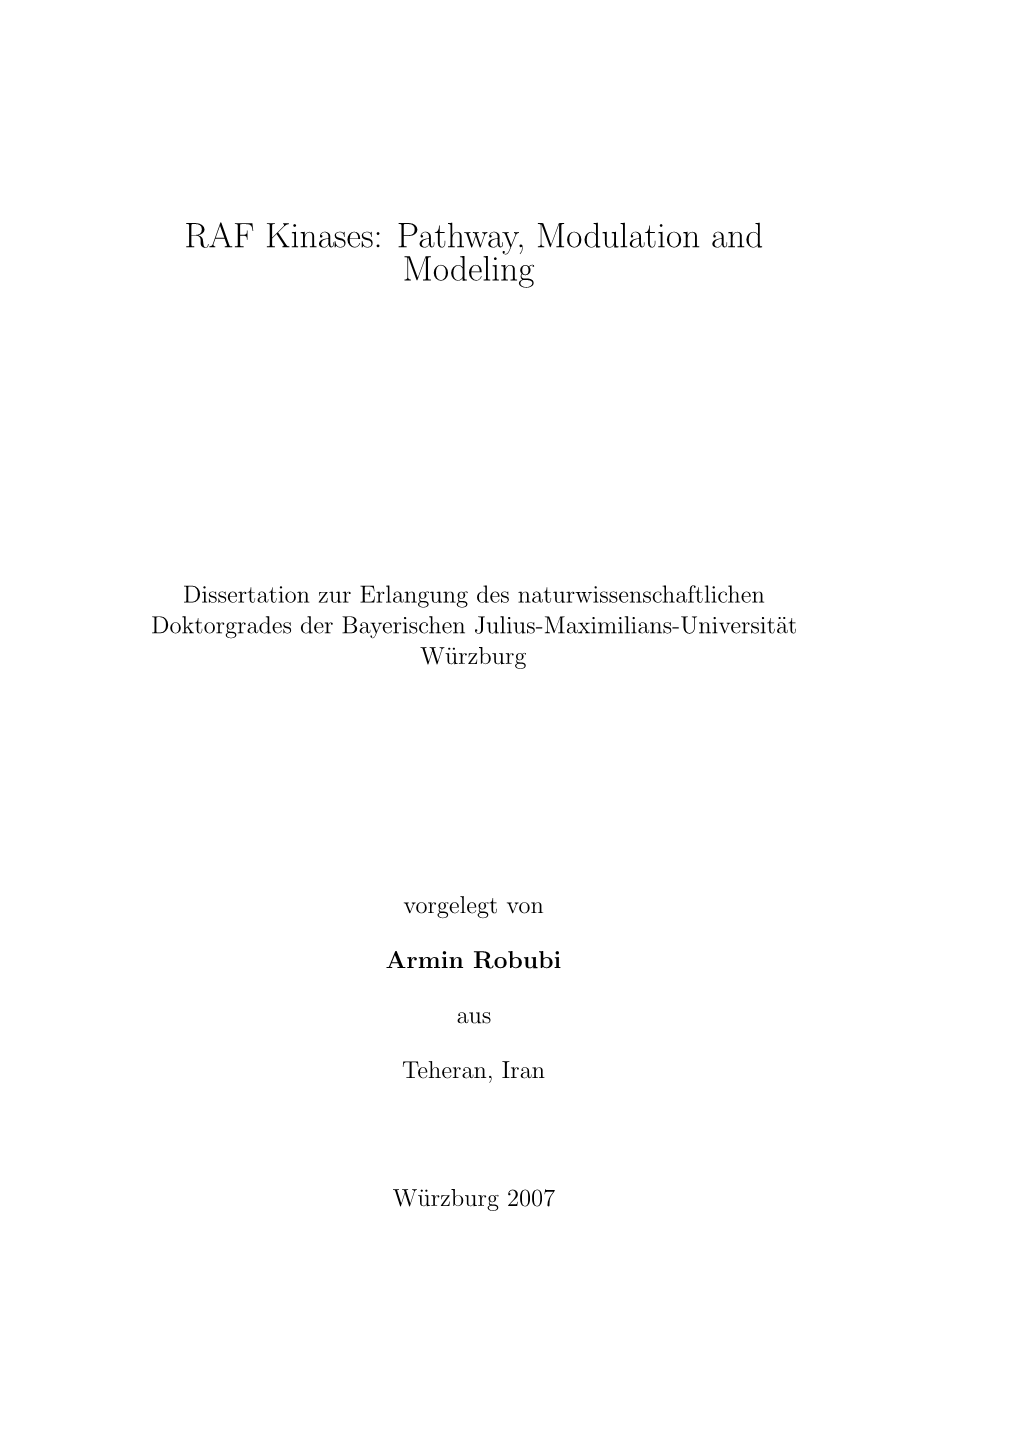 RAF Kinases: Pathway, Modulation and Modeling